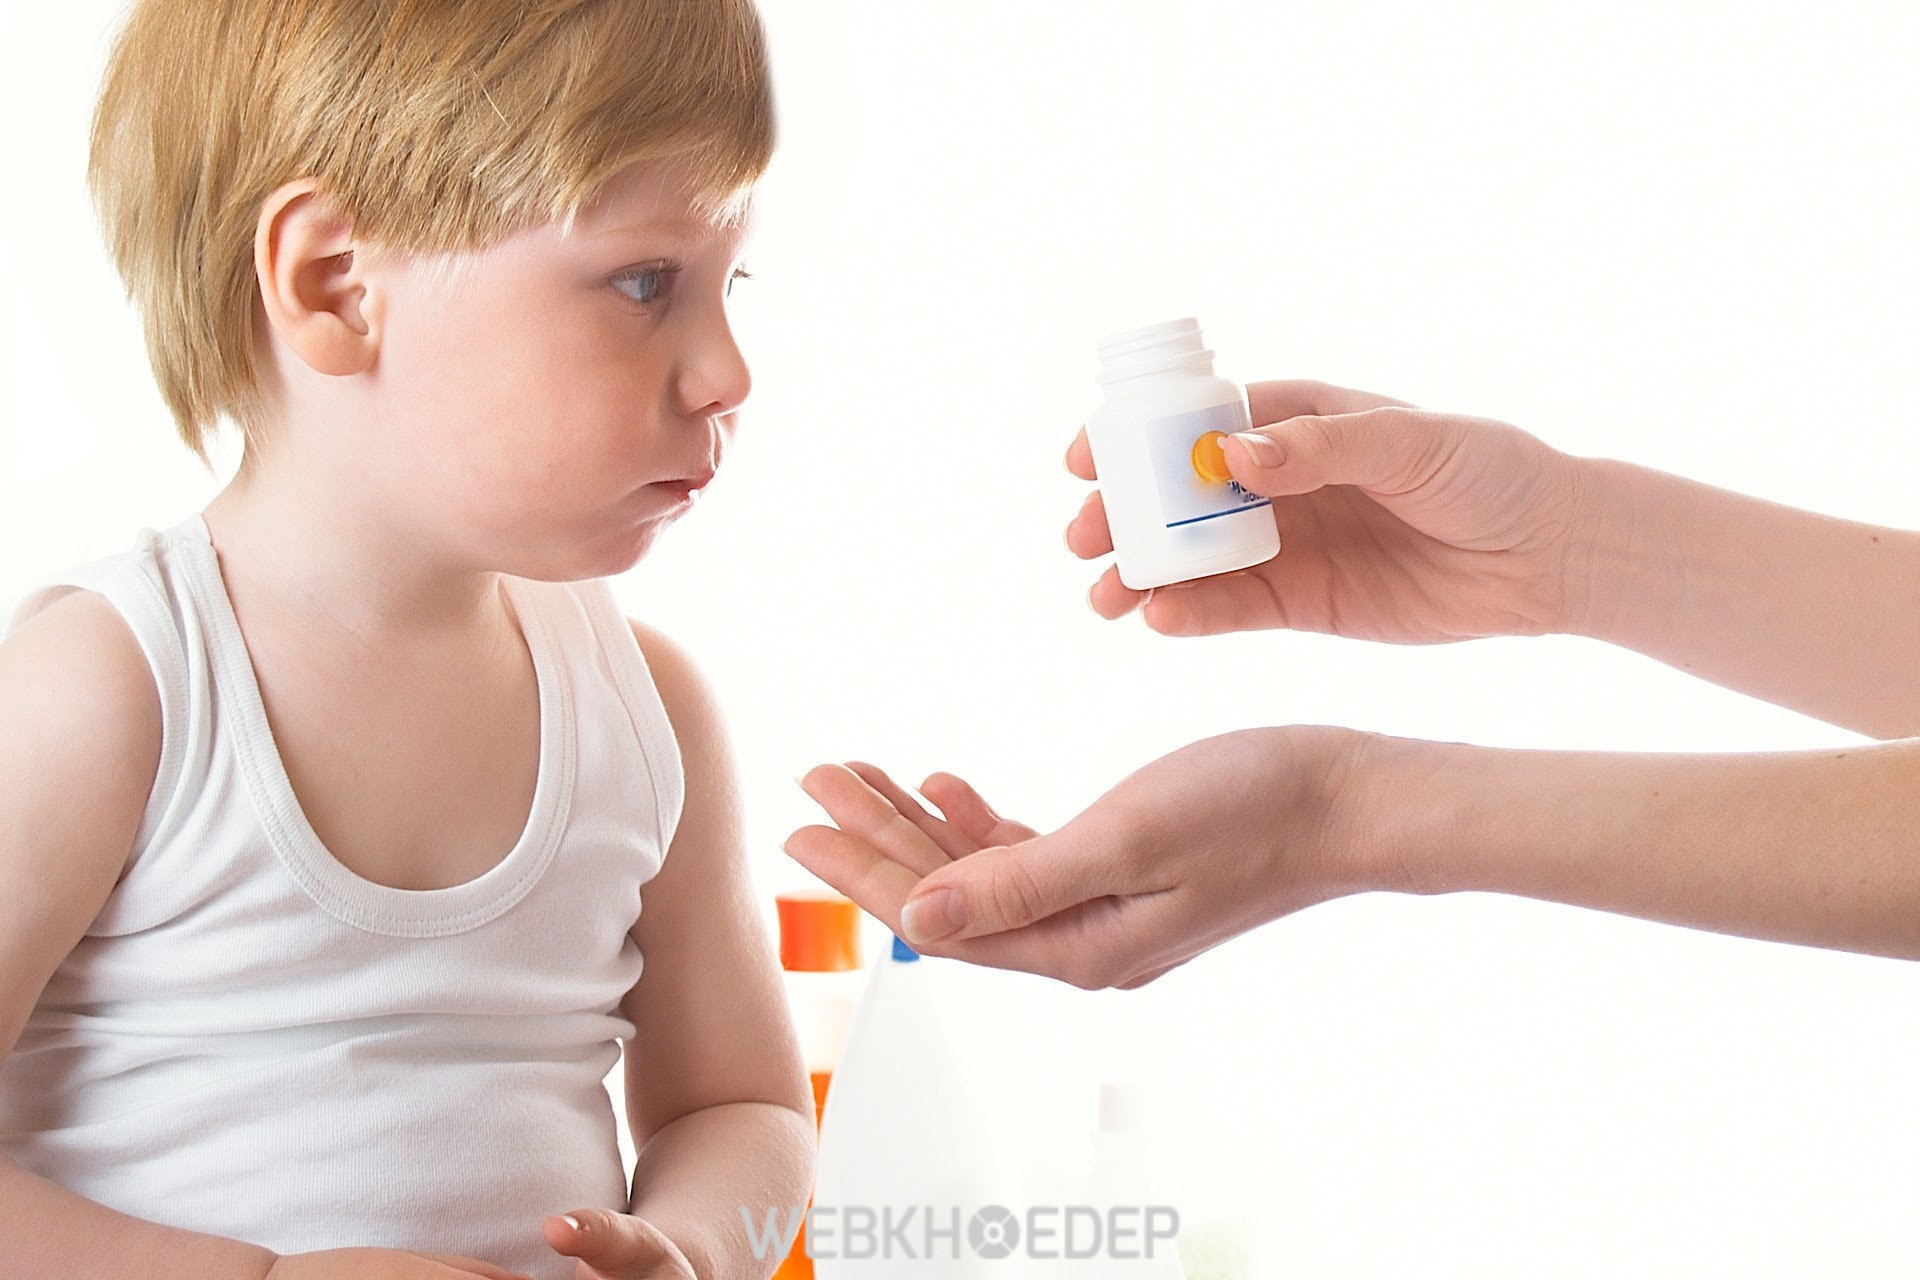 Các bé có những triệu chứng nghiêm trọng nhưng không phản ứng với liệu pháp, được cho phép sử dụng thuốc methylphenidate liều lượng thấp, hoặc giả dược